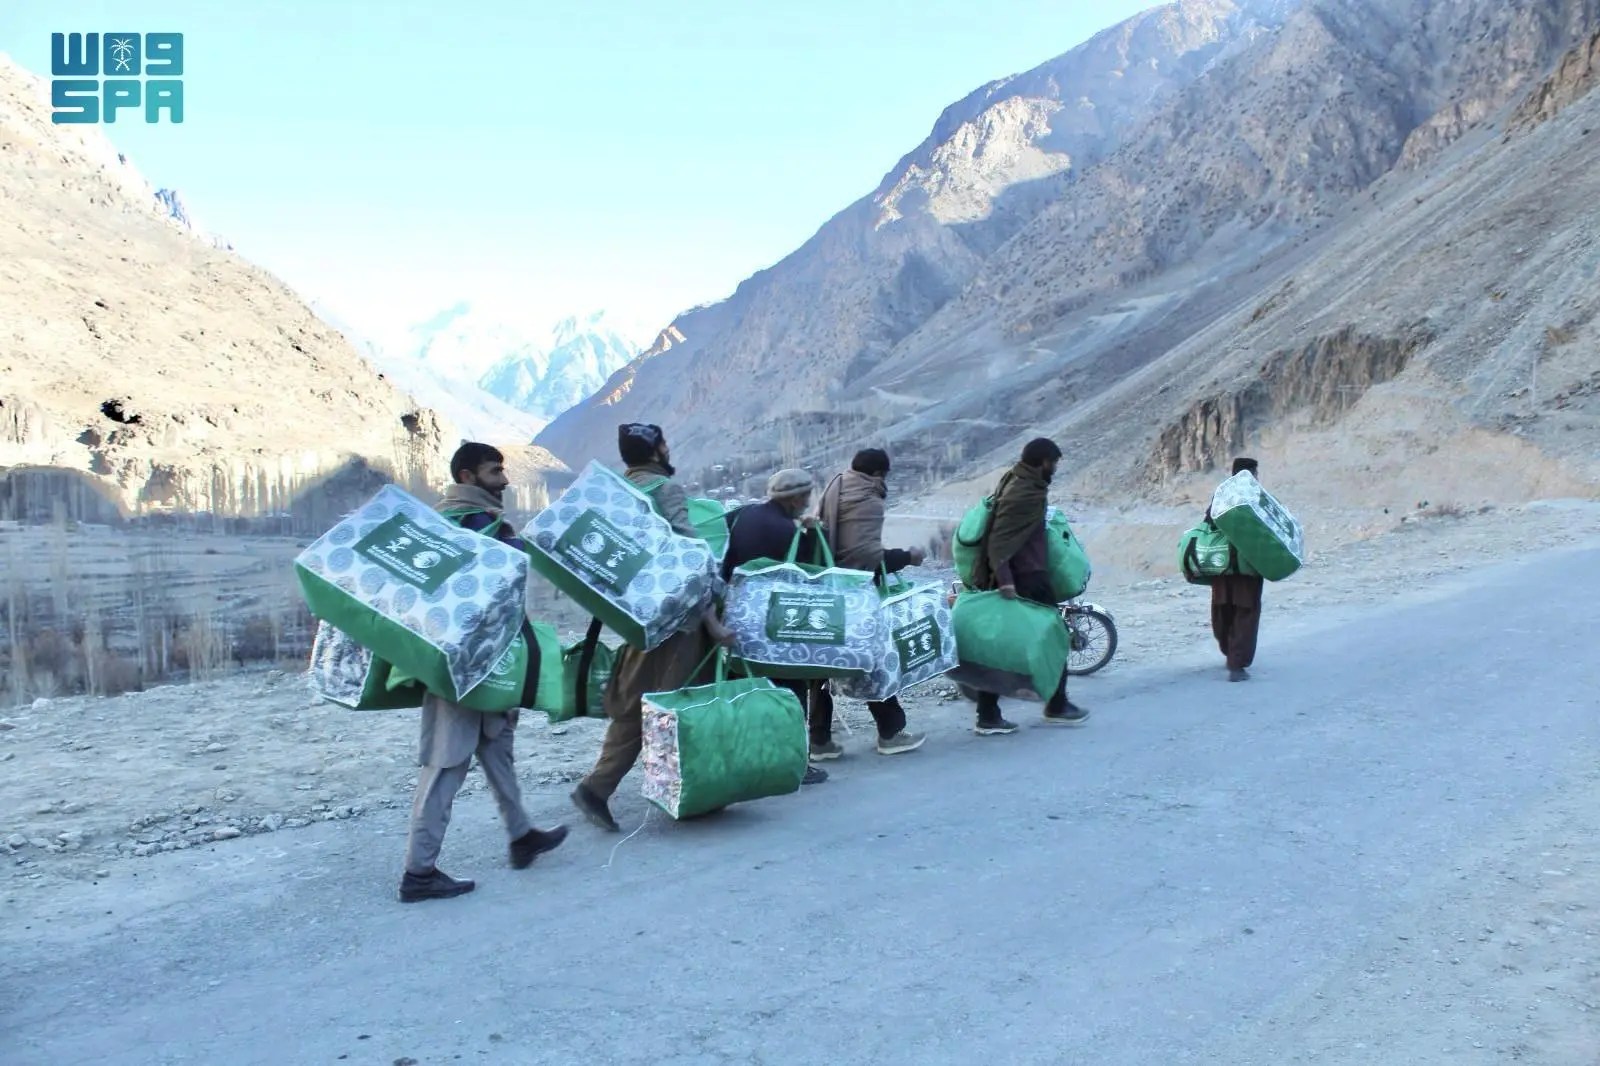 مركز الملك سلمان للإغاثة يوزع 470 حقيبة شتوية في منطقة قوبيس ياسين بإقليم جلجت بلتستان في باكستان